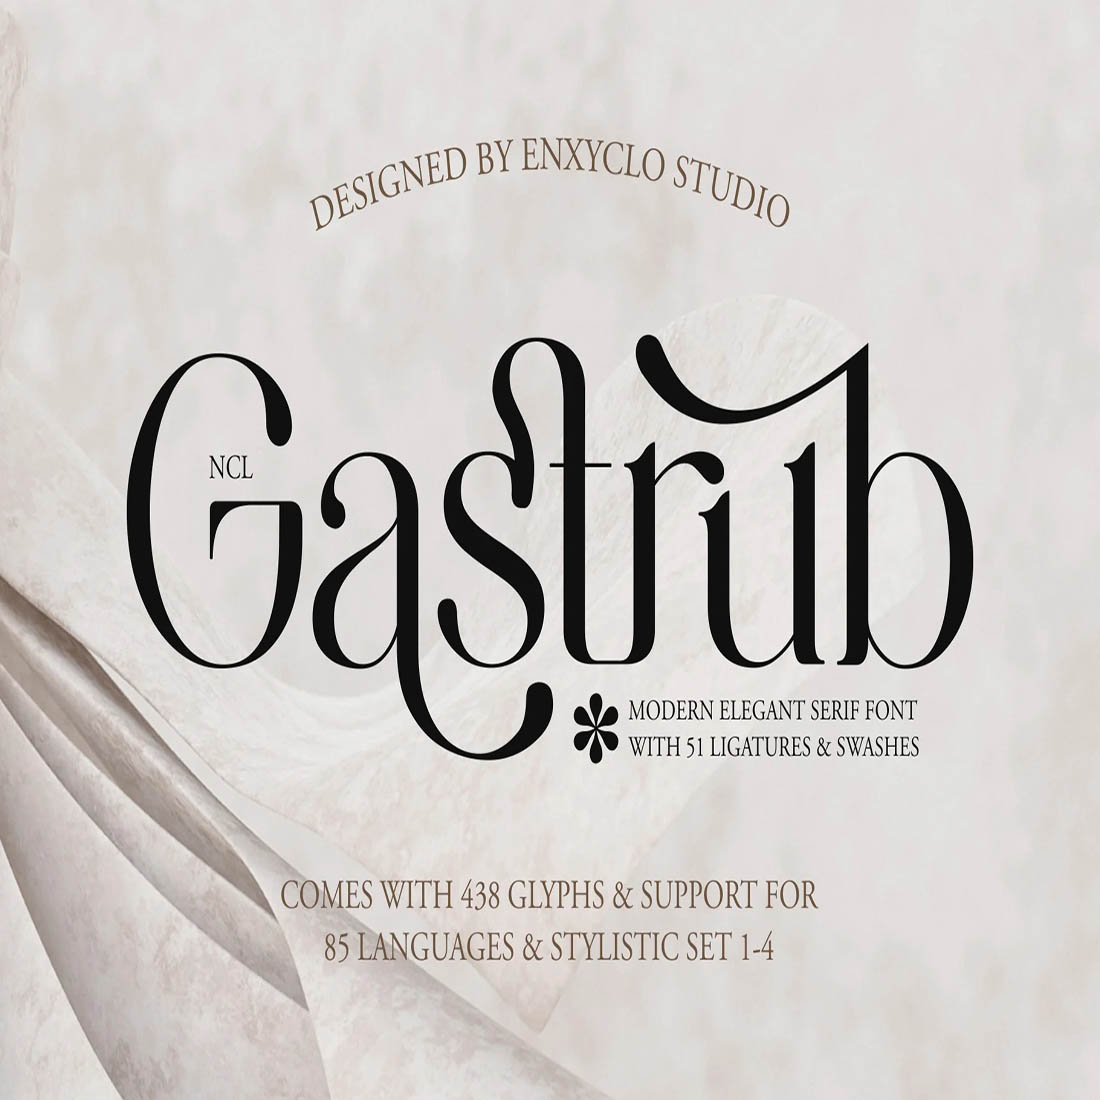 NCL GASTRUB - MODERN ELEGANT LIGATURE FONT cover image.